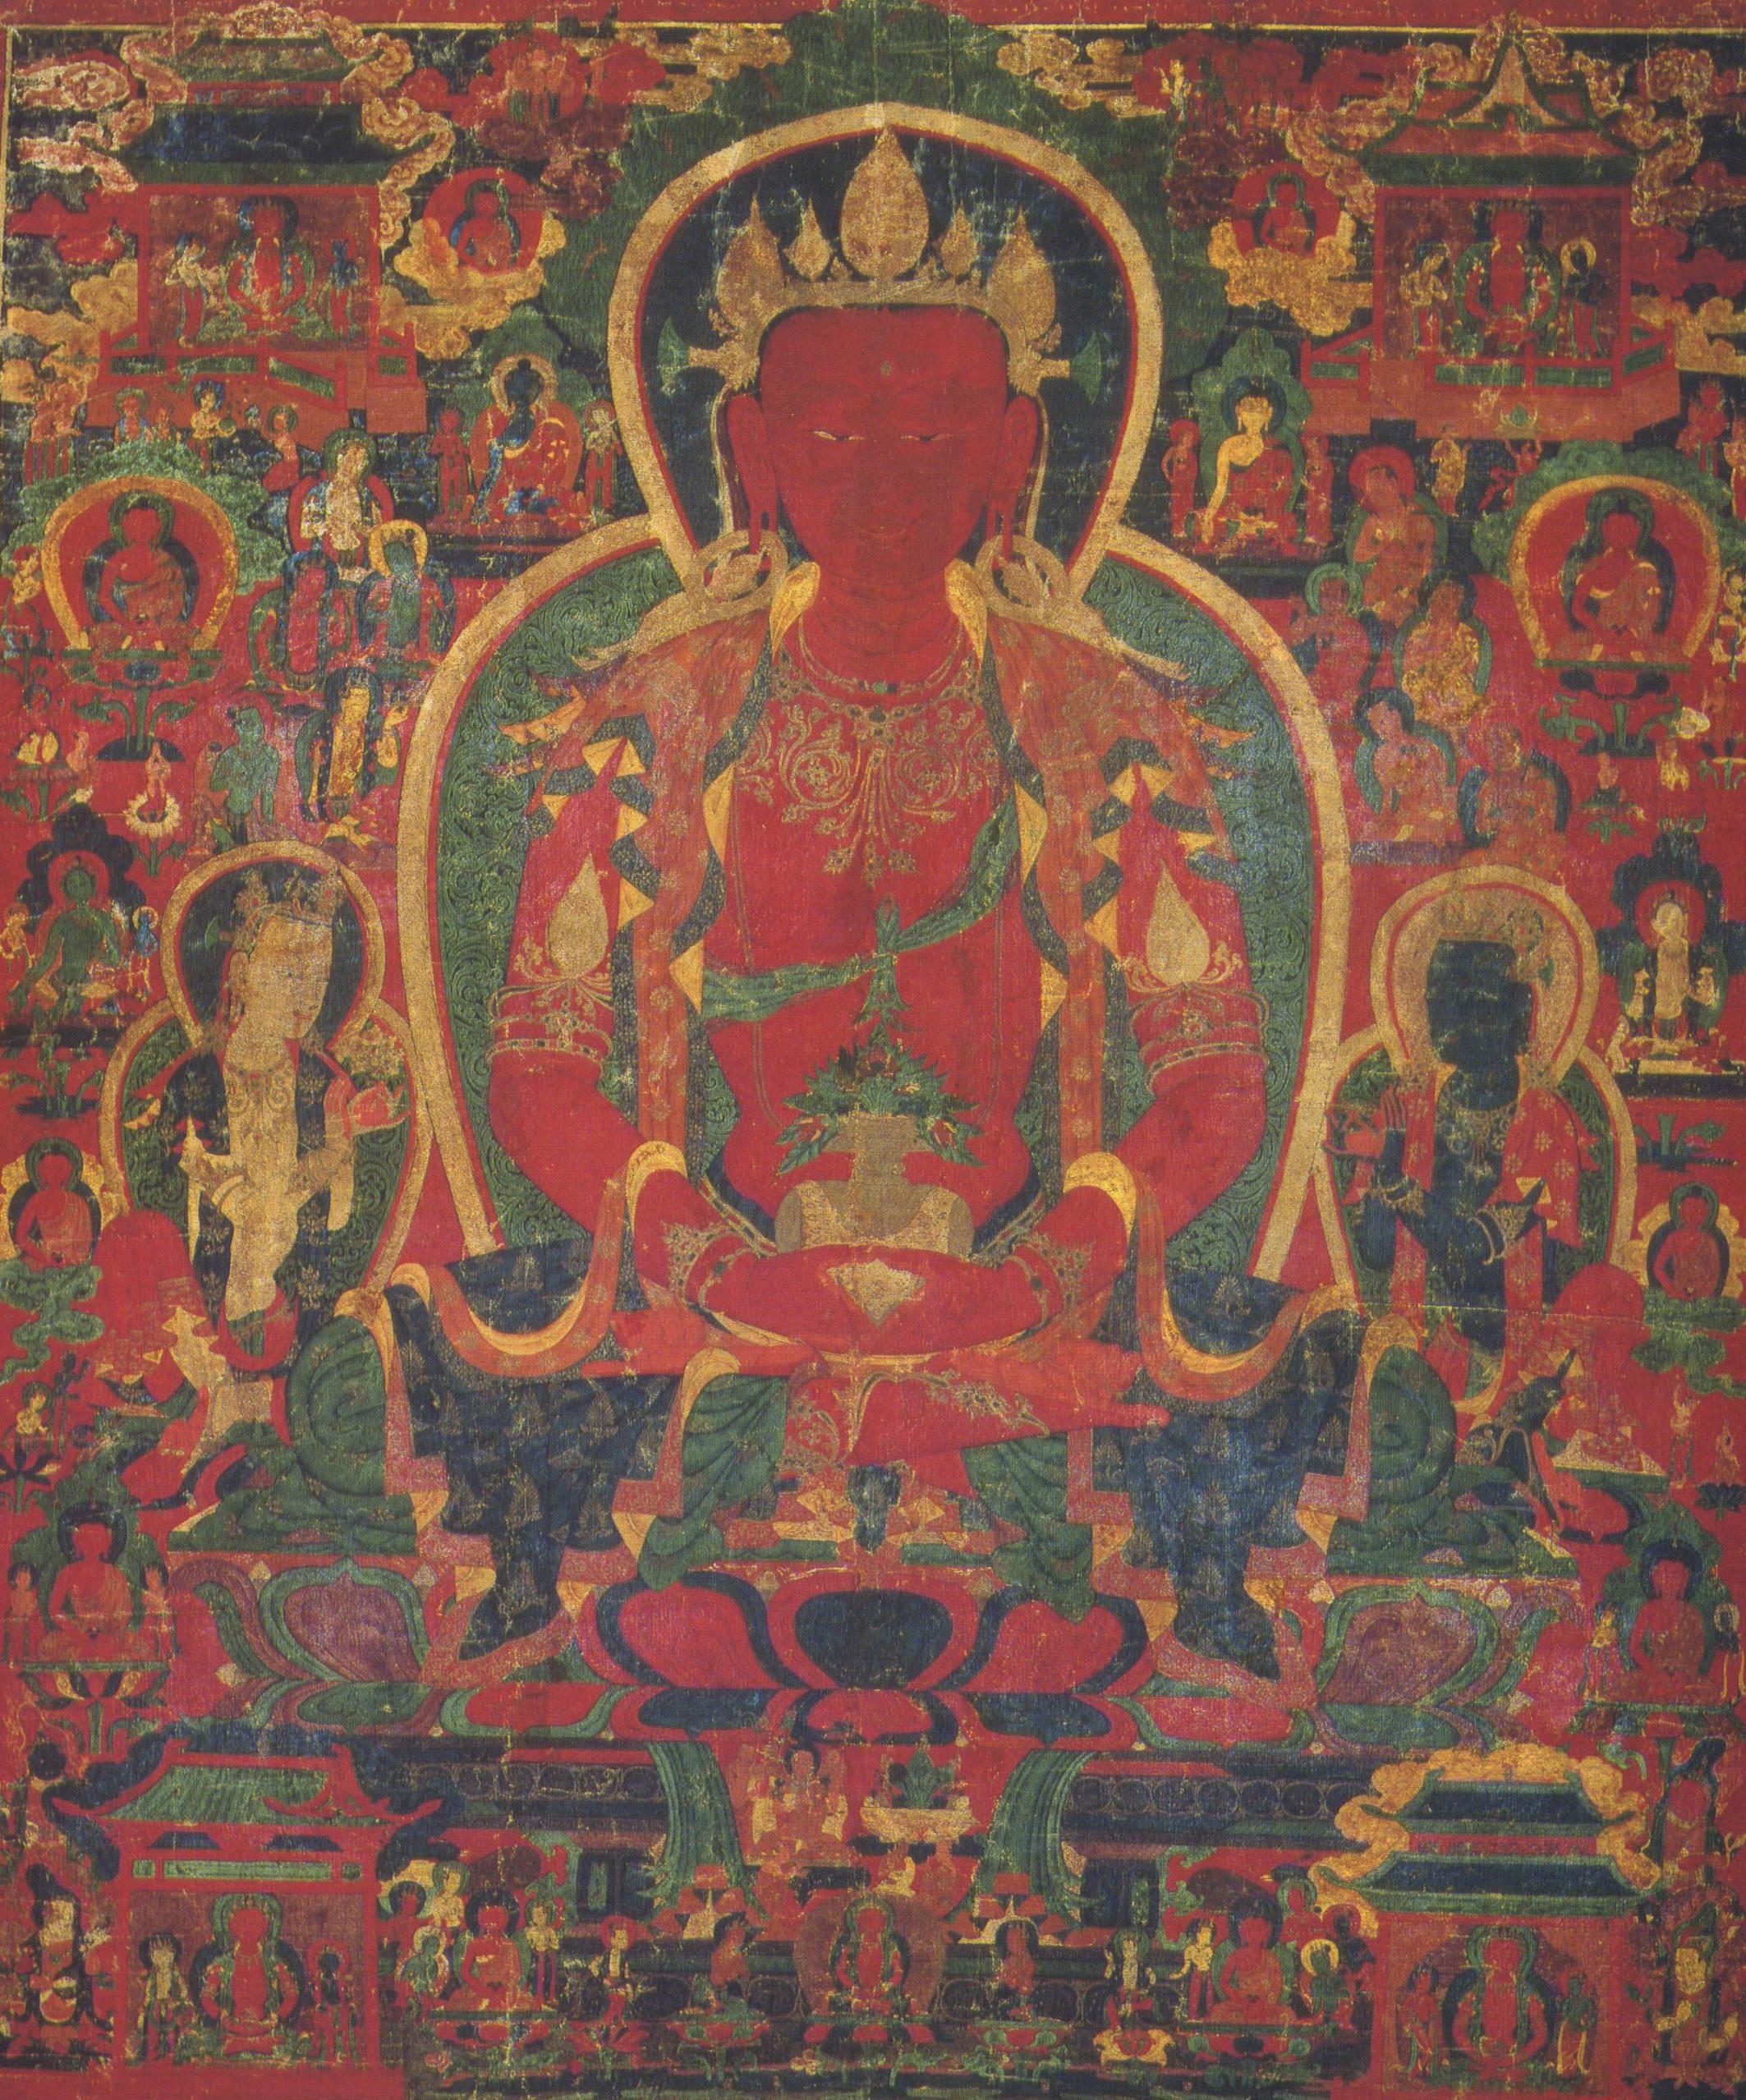 Lama Tzong Khapa: Qualunque fonte di virtù abbia conseguito nel corso di tutte le mie vite, tramite azioni fisiche, verbali e mentali, possa tutto ciò servire unicamente come causa di bene altruistico e di pura illuminazione.